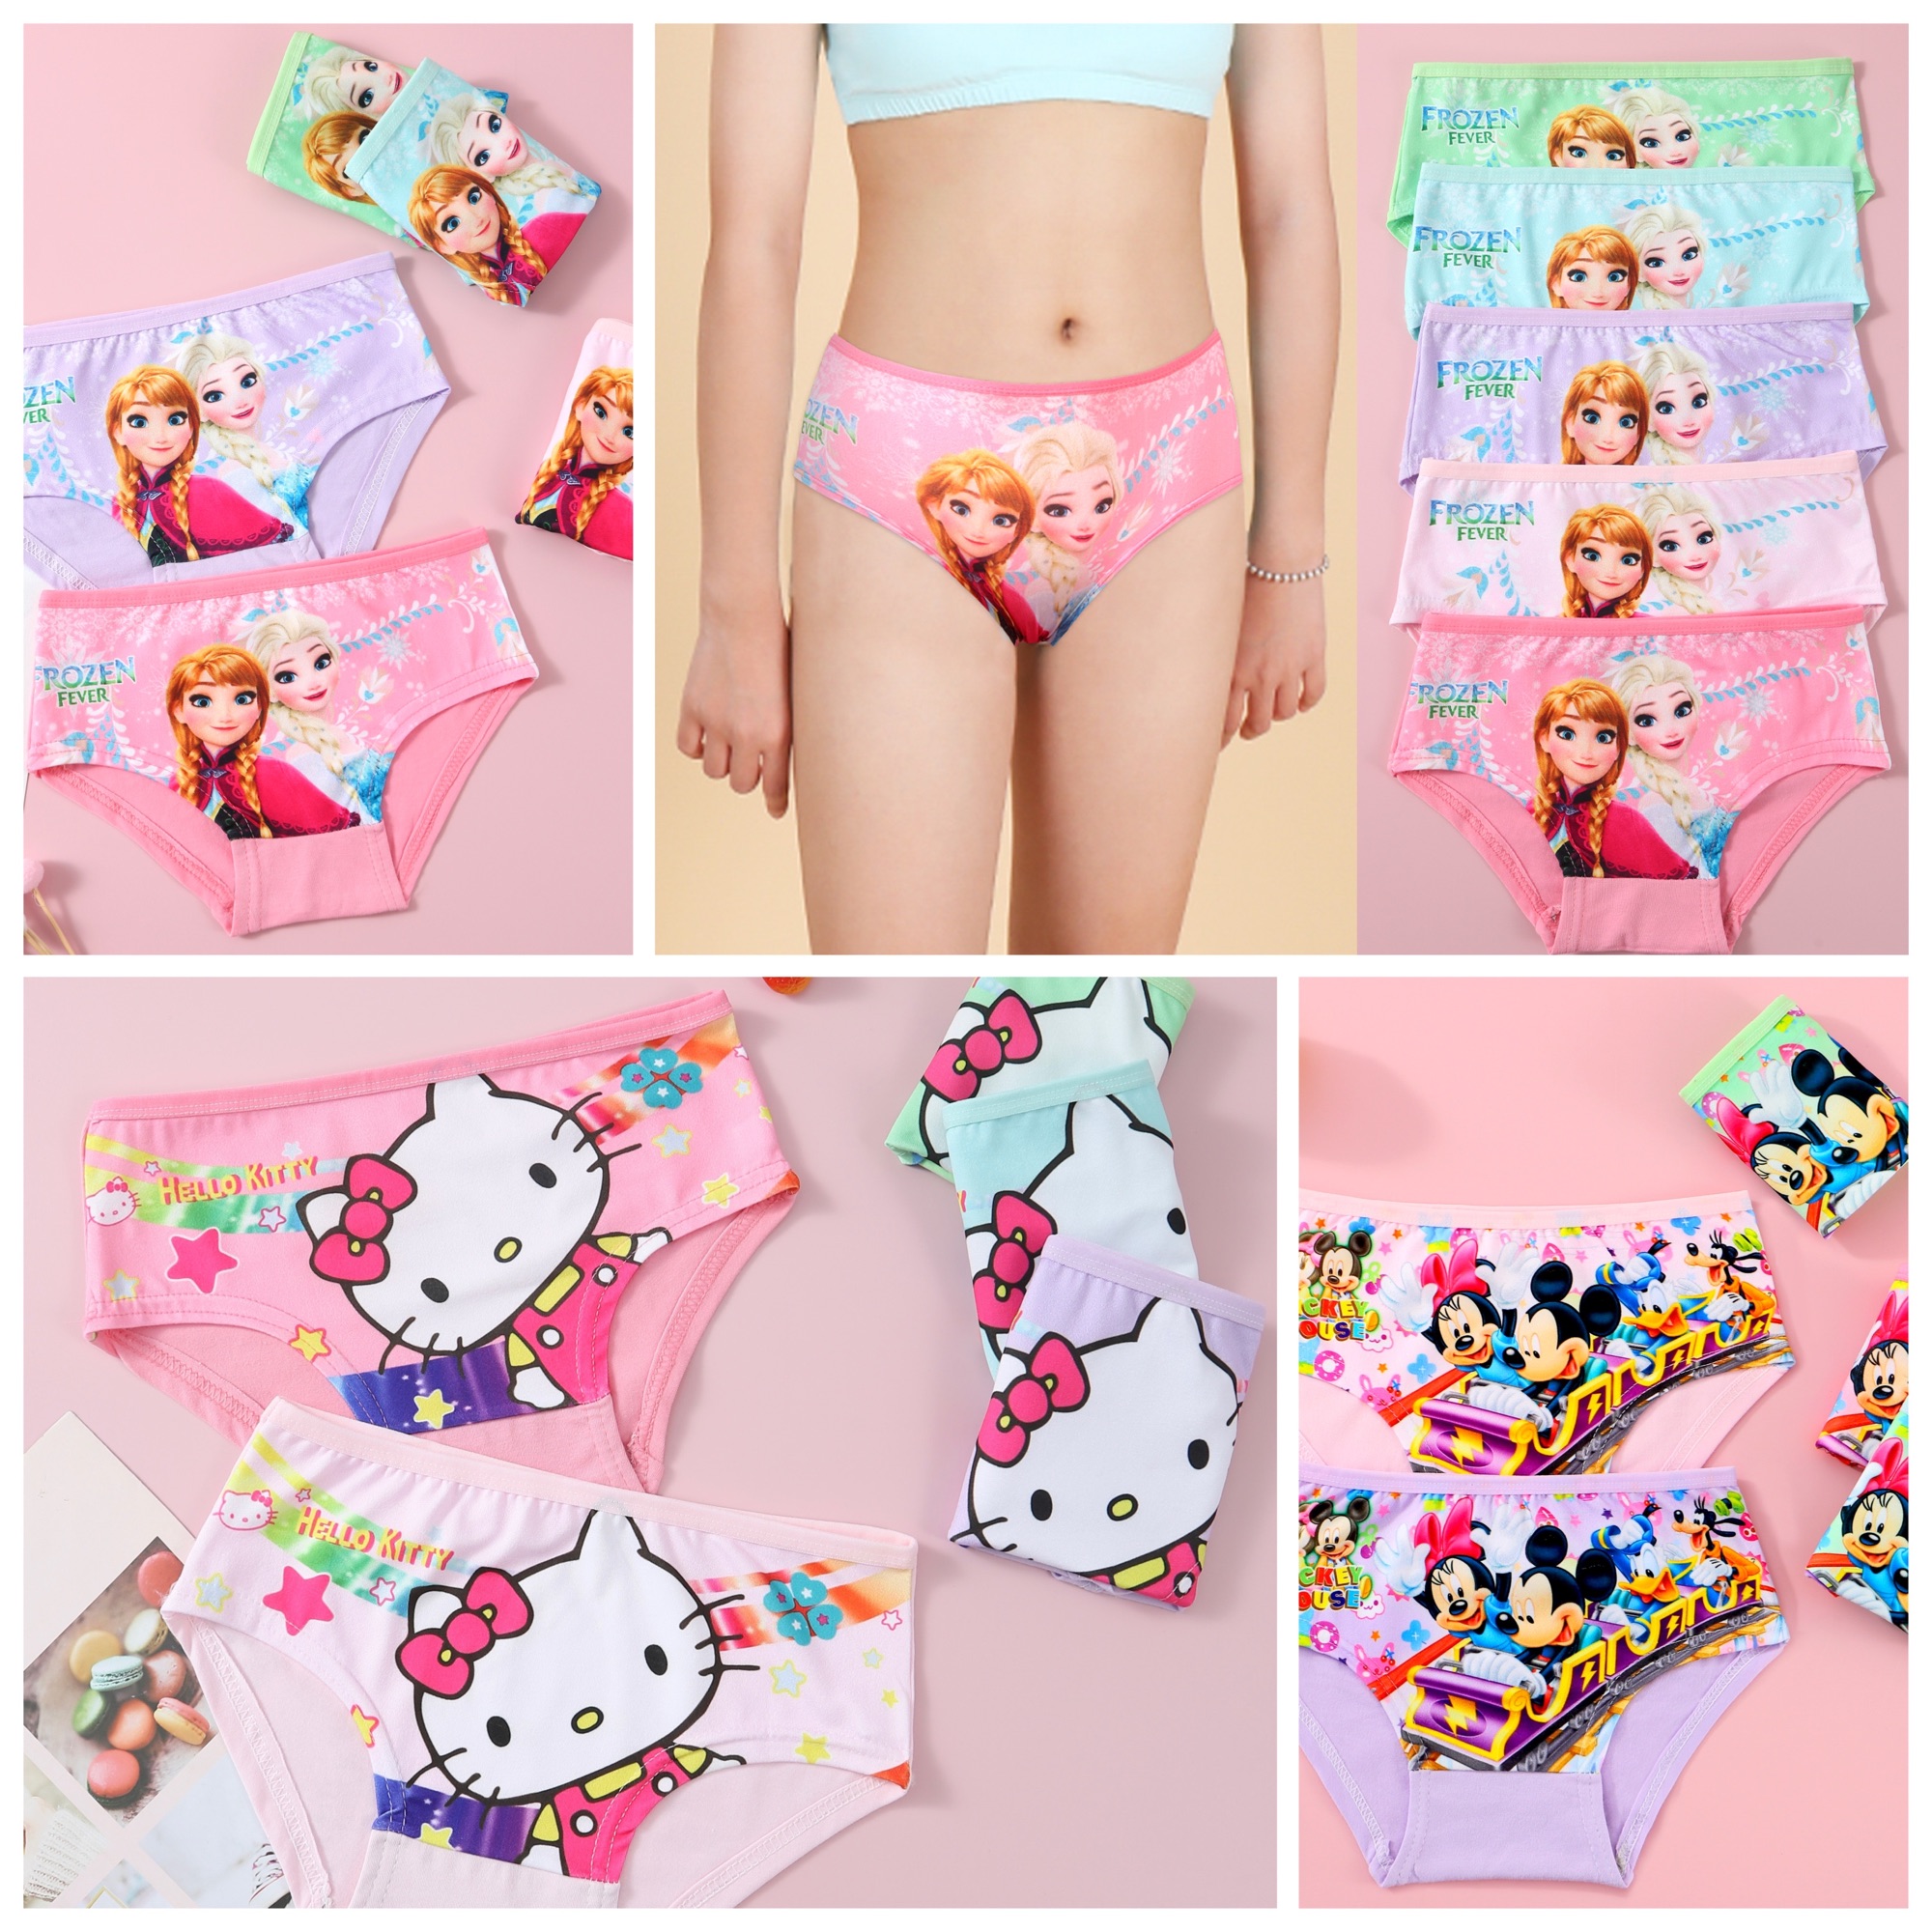 The Original Hello Kitty Underwear by Leonofparodies on DeviantArt